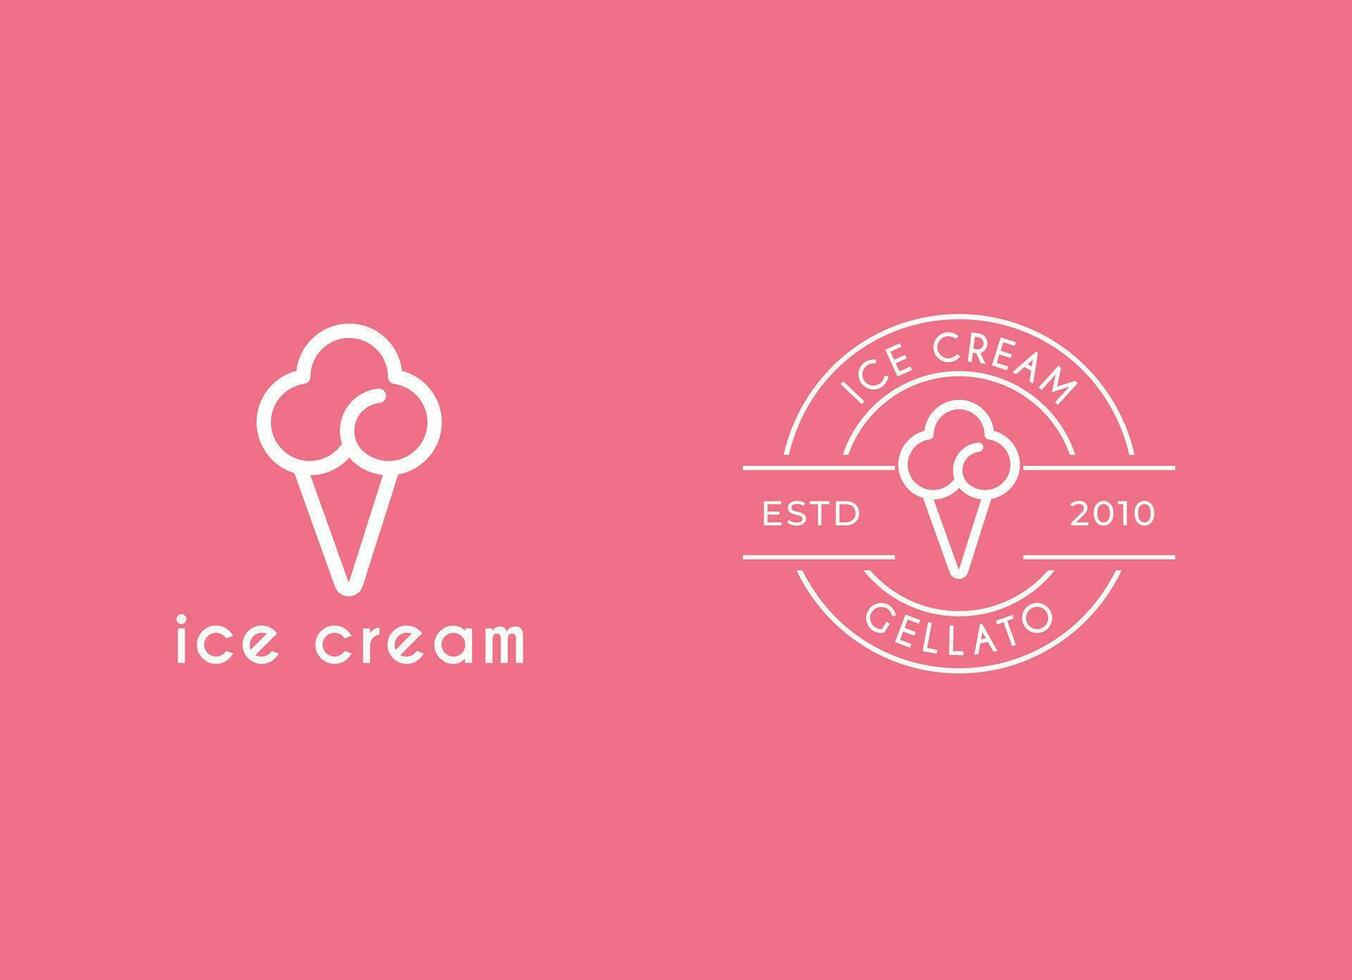 helado gelato logotipo premium vector